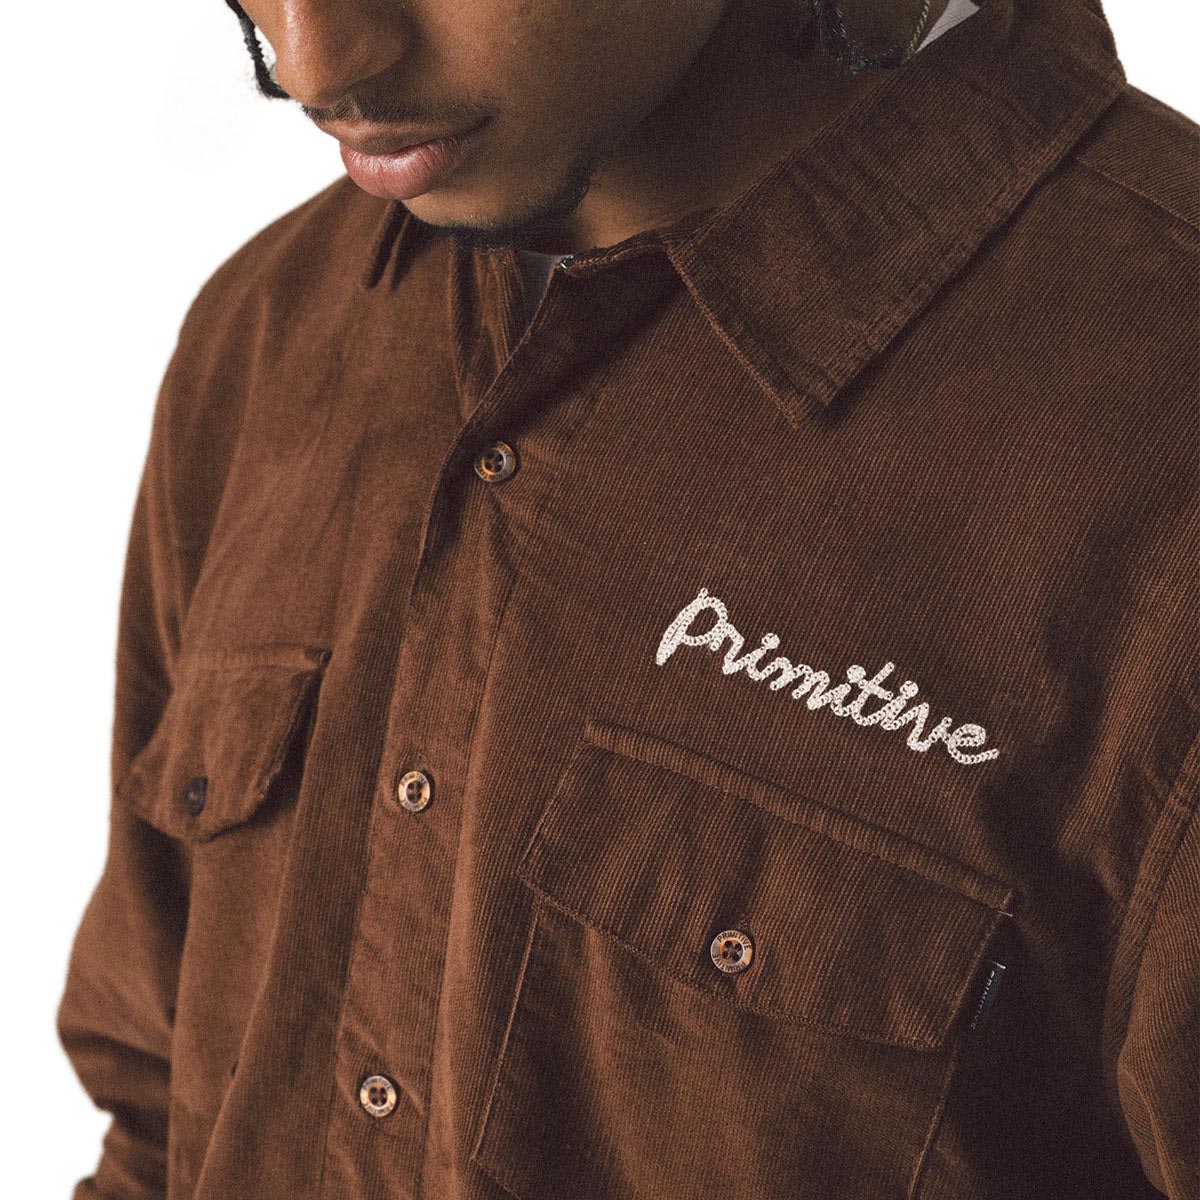 Primitive De Soto Woven Jacket - Brown image 2